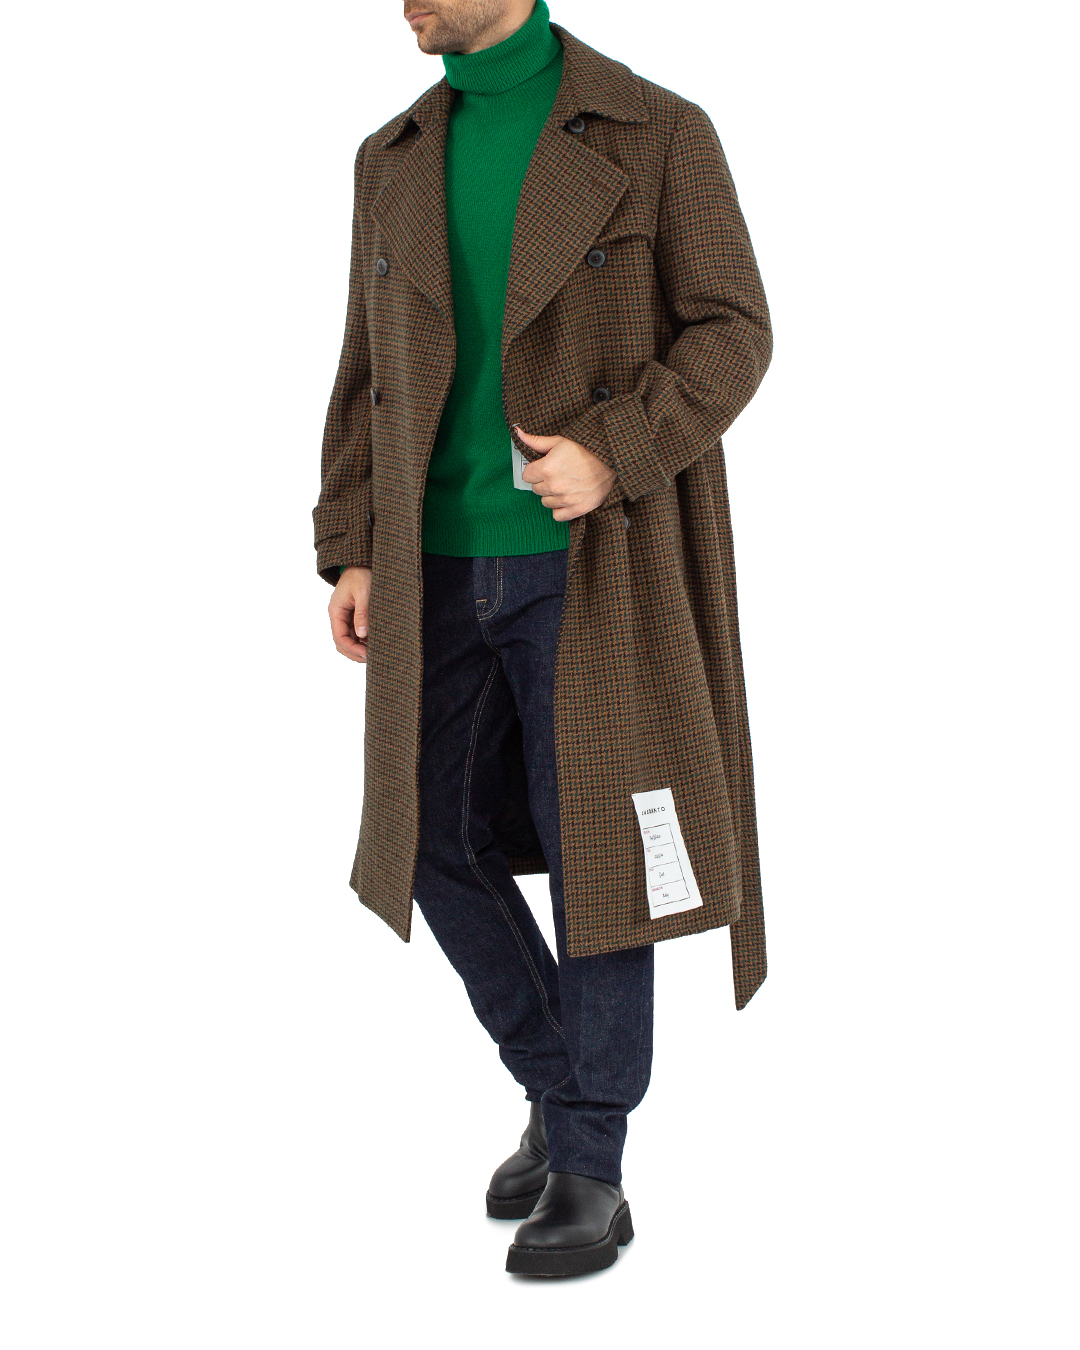 пальто AMARANTO B6R0041 коричневый+принт 54, размер 54, цвет коричневый+принт B6R0041 коричневый+принт 54 - фото 2